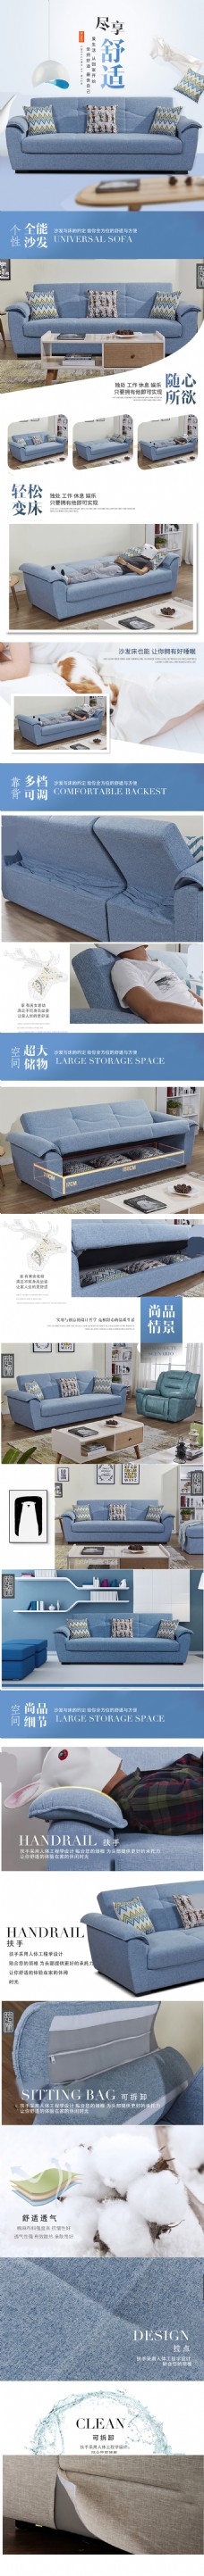 现代生活之日式IKEA家具淘宝天猫家具沙发详情页描述PSD模板